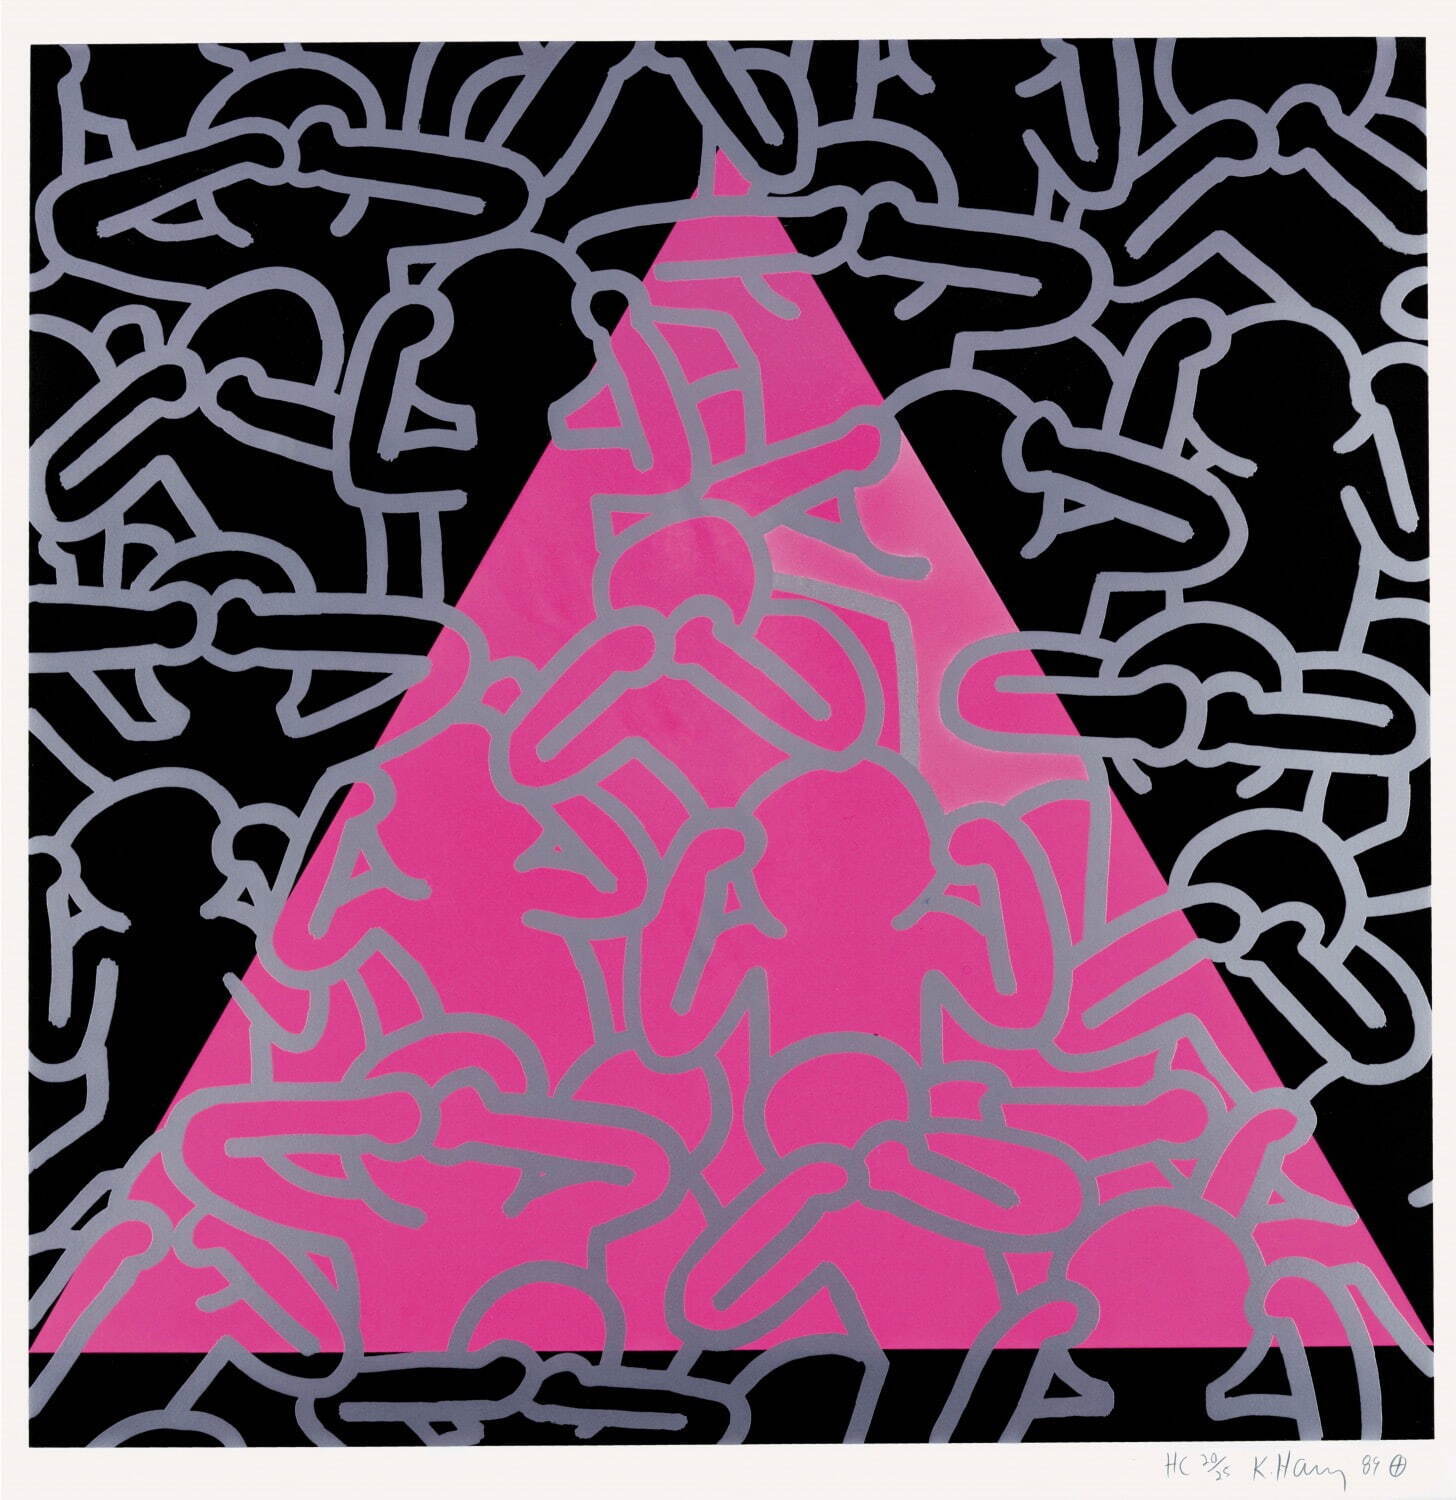 キース・へリング 《沈黙は死》 1989年 中村キース・ヘリング美術館蔵
Keith Haring Artwork ©Keith Haring Foundation